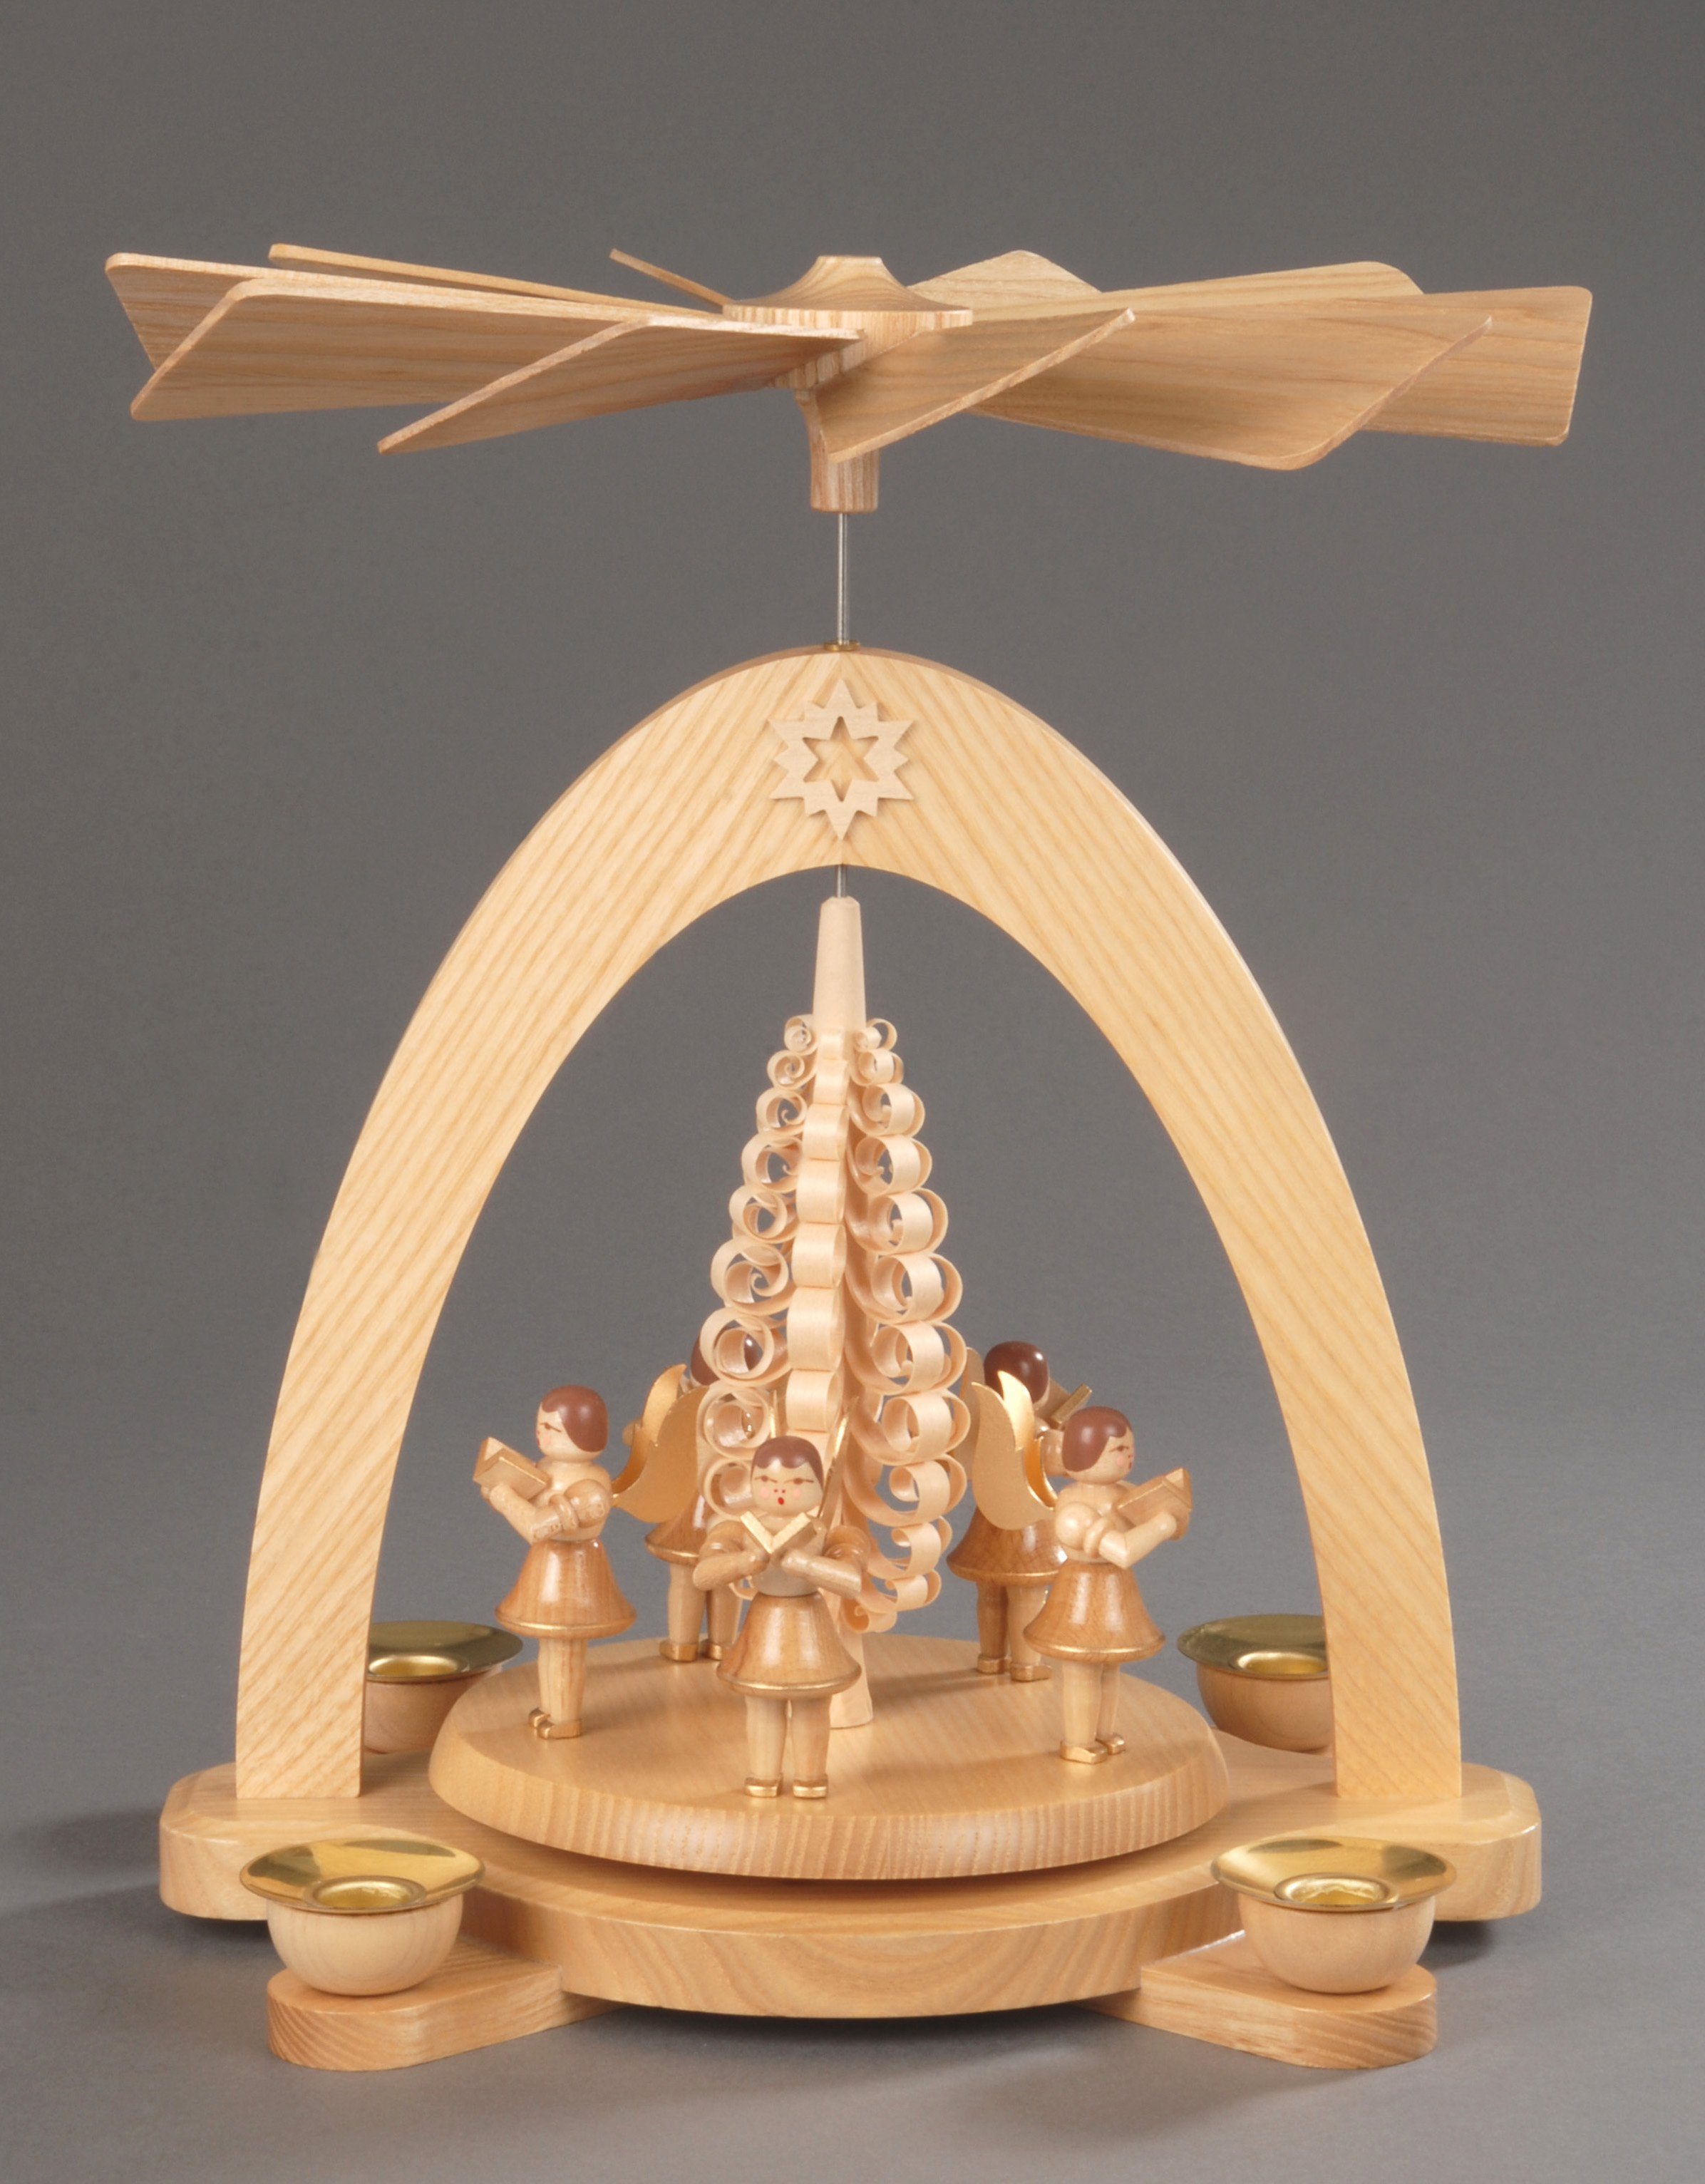 5 aus Erzgebirge Handwerkskunst Preissler dem Weihnachtsdeko, Weihnachtspyramide mit Albin Spanbaum, Engel